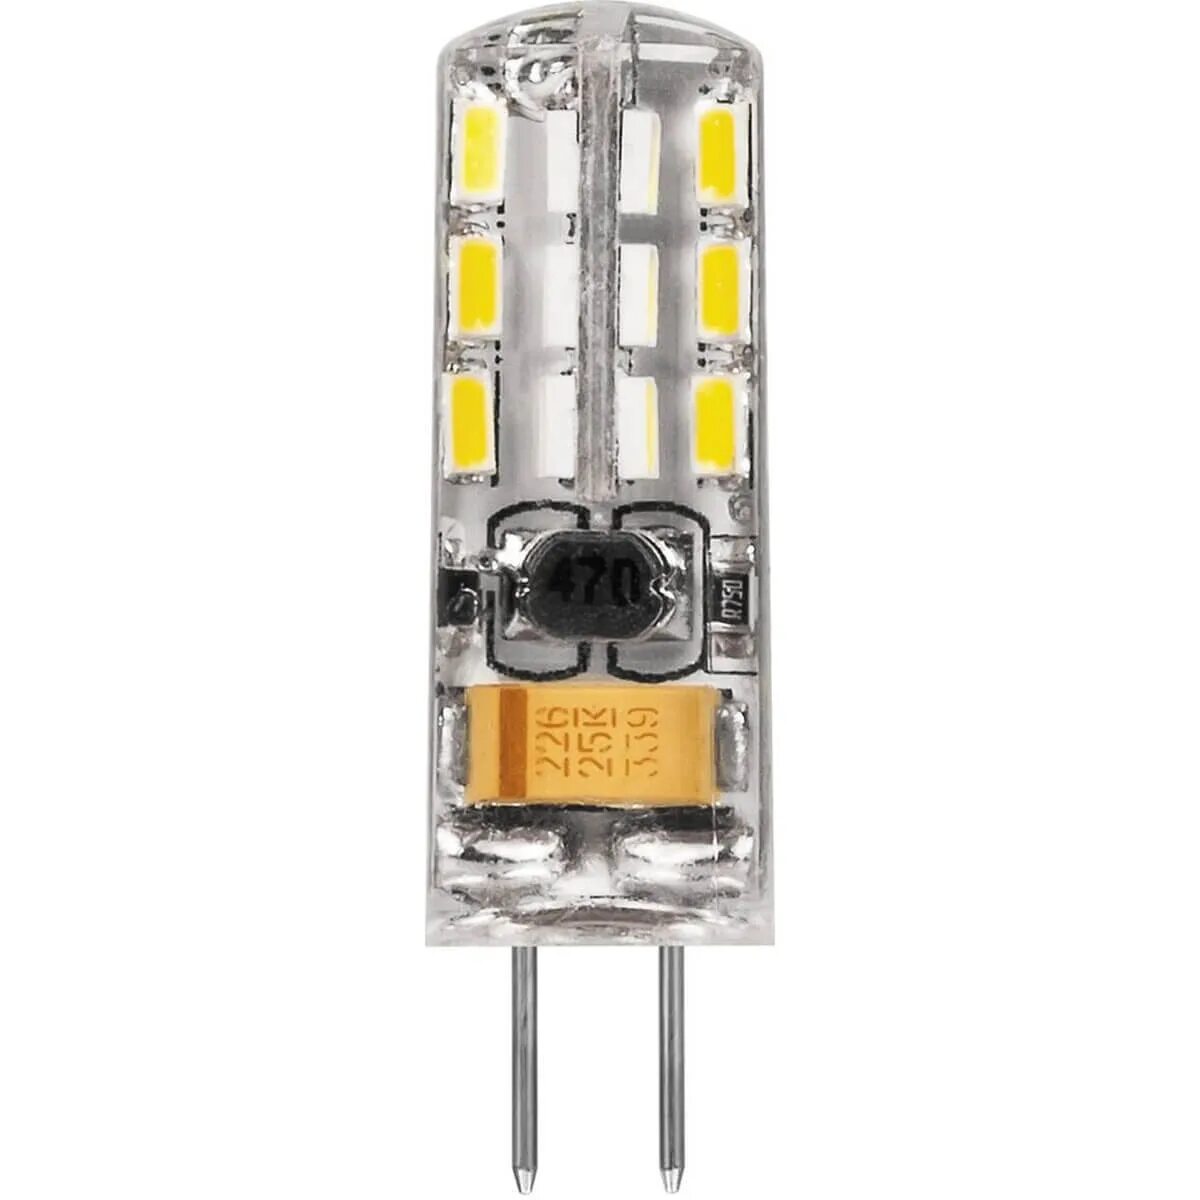 4 светодиоды. Лампа светодиодная led 2вт 12в g4 белый капсульная (lb-420). Лампа led g4 2w (12v) 4000k lb-420 Feron. Лампа светодиодная led 3вт 12в g4 теплый капсульная (lb-422 48led). Лампа светодиодная Feron lb-420 25858, g4, JC, 2вт.